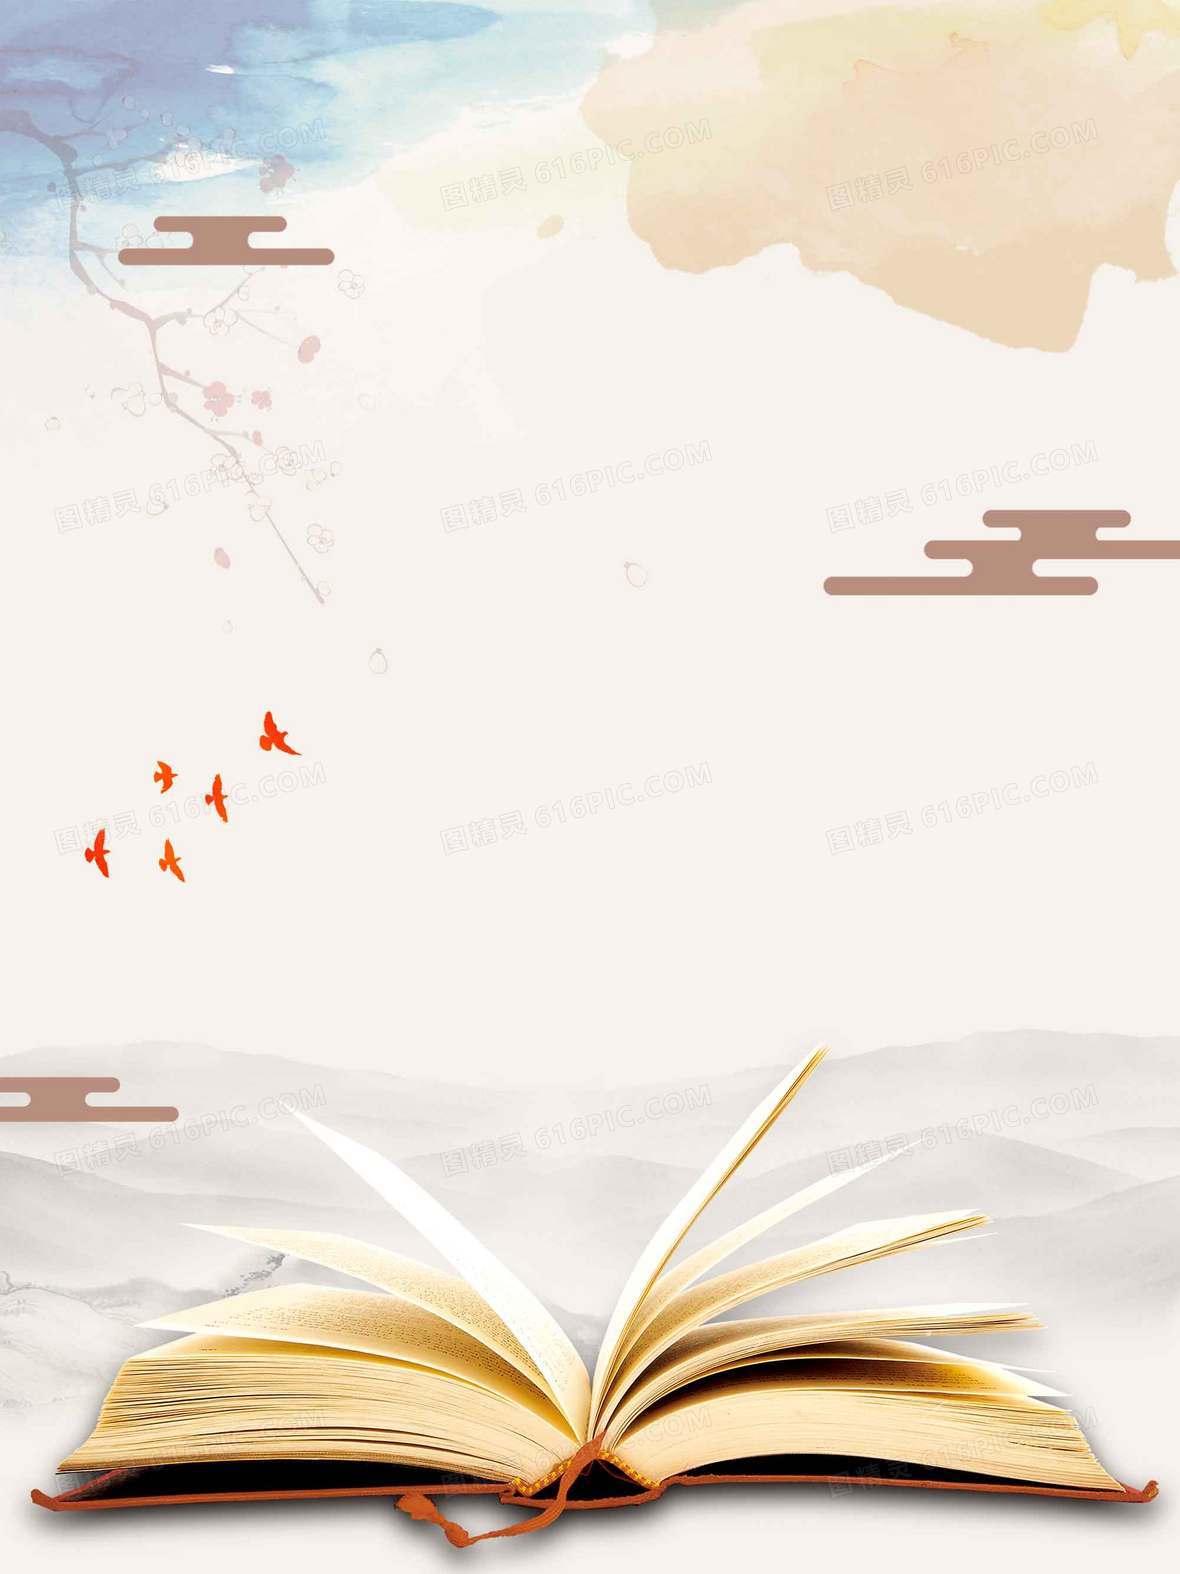 天坛故宫广告设计背景模板